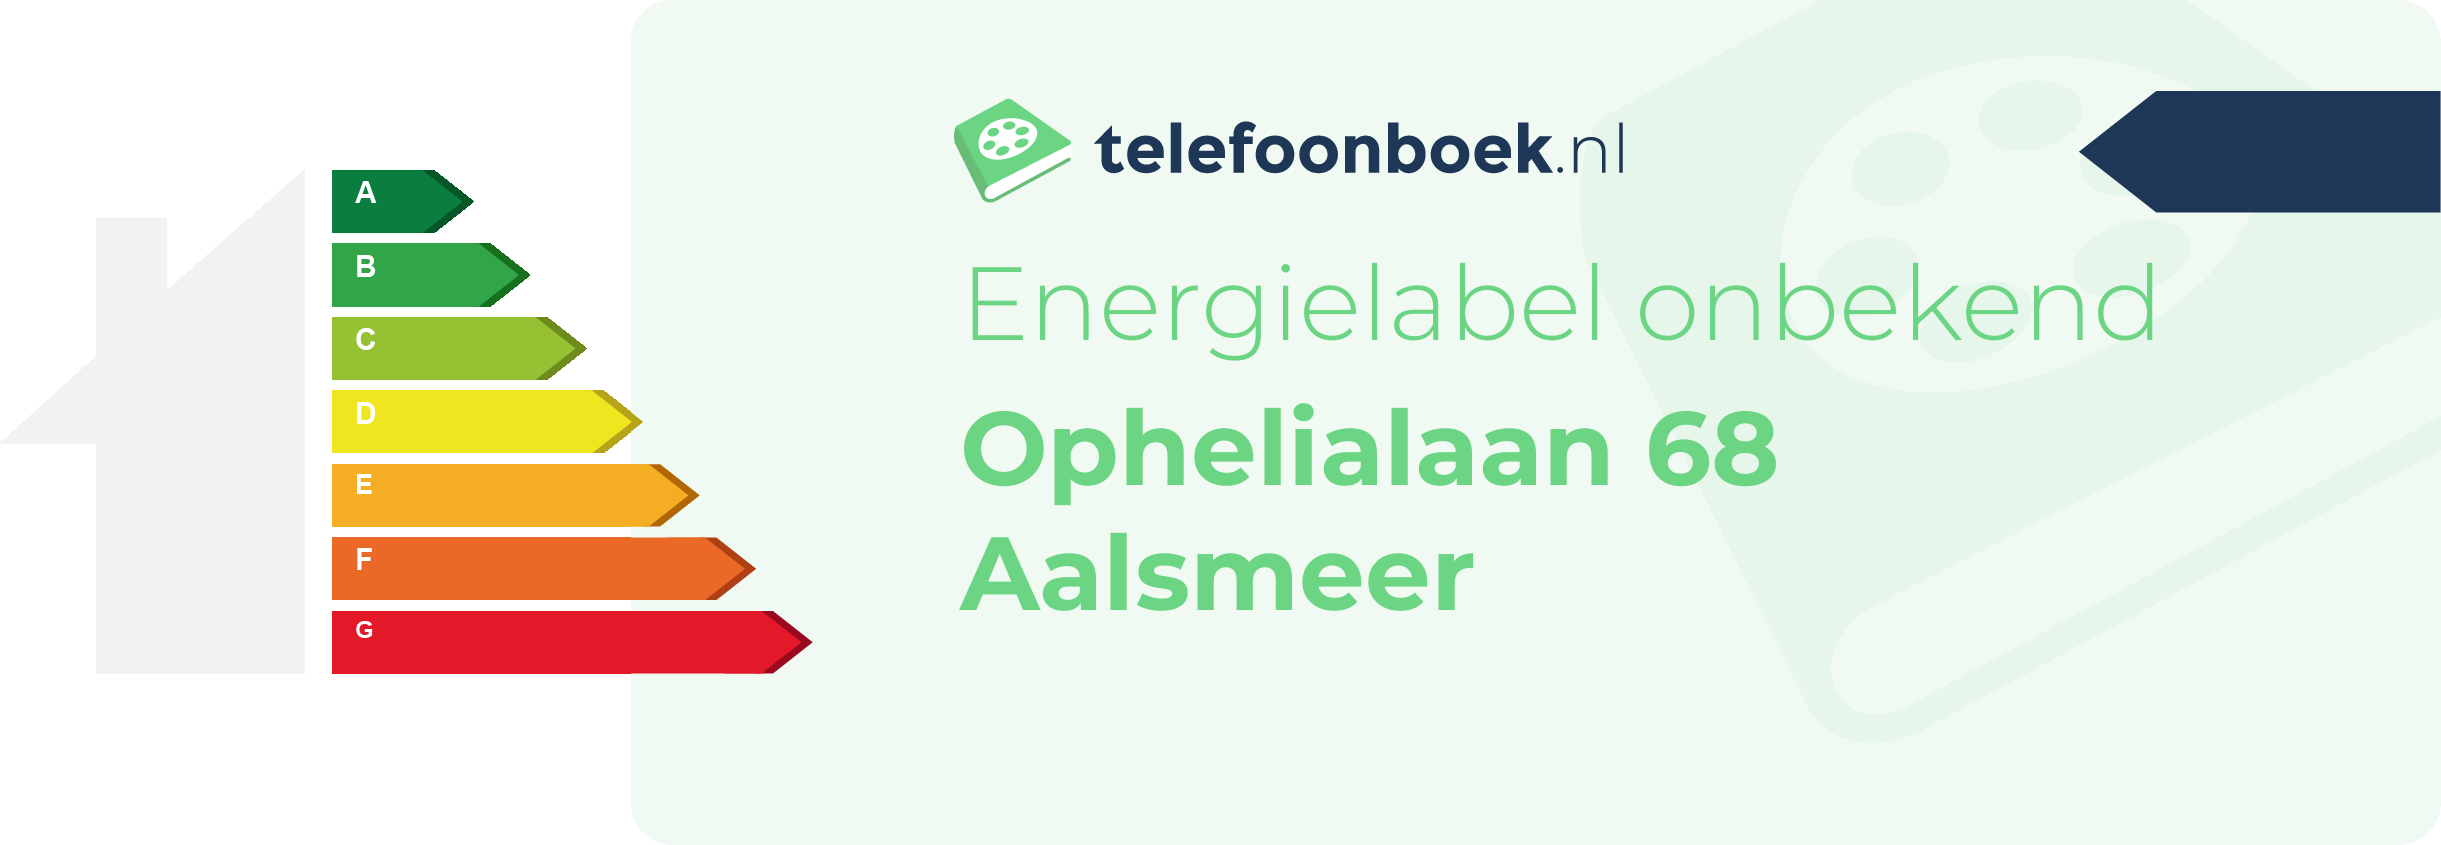 Energielabel Ophelialaan 68 Aalsmeer